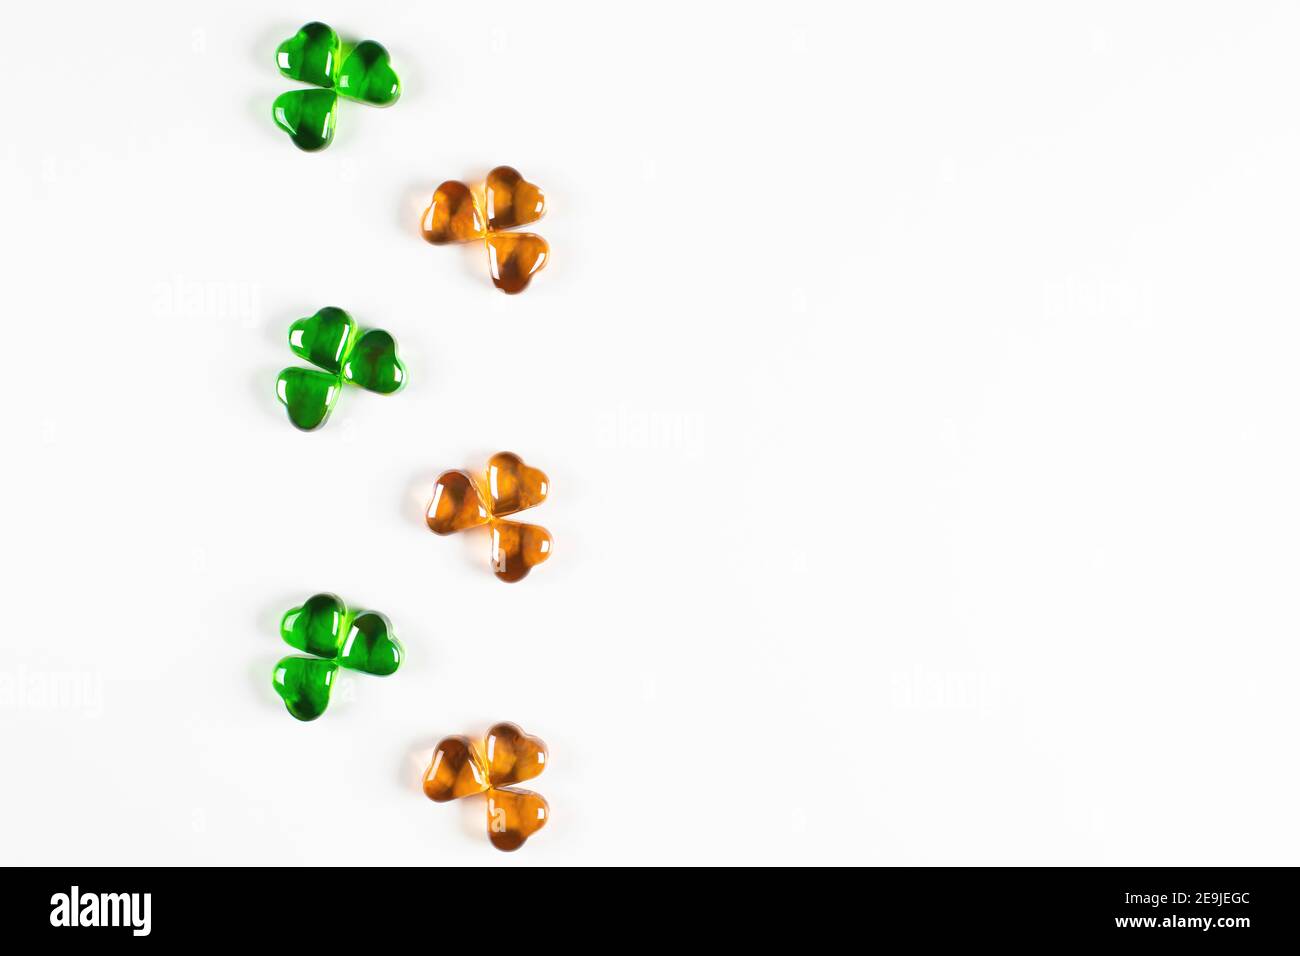 Shamrock Symbole aus grünem und orangefarbenem Glas Herzen auf Weißer Hintergrund Stockfoto